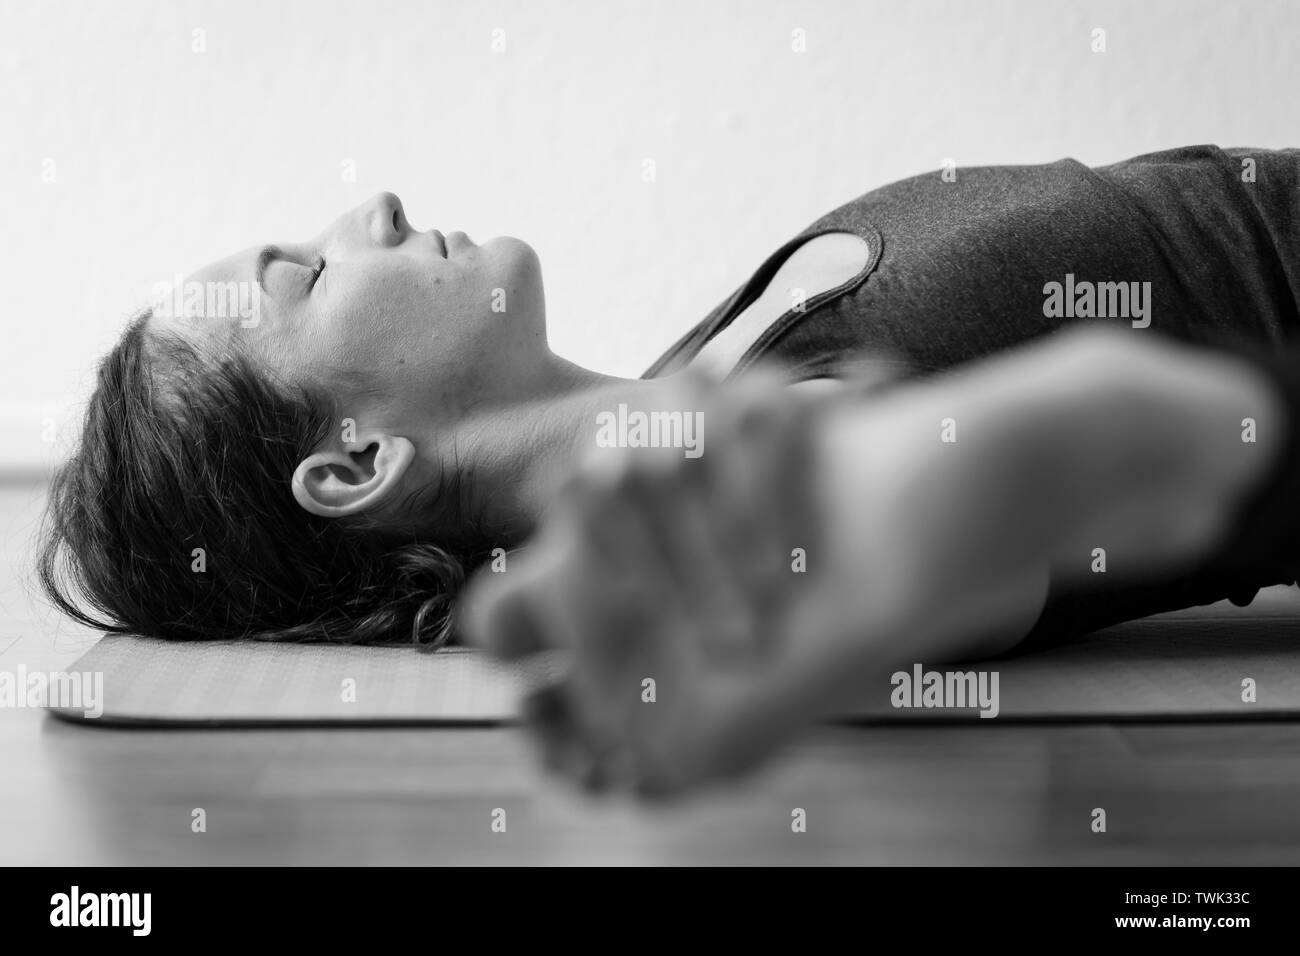 Bodennahe, schwarz-weiße horizontale Nahaufnahme einer jungen brünetten europäischen Frau, die im Innenraum liegend Straddle Pose oder Supta Samakonasana spielt. Stockfoto